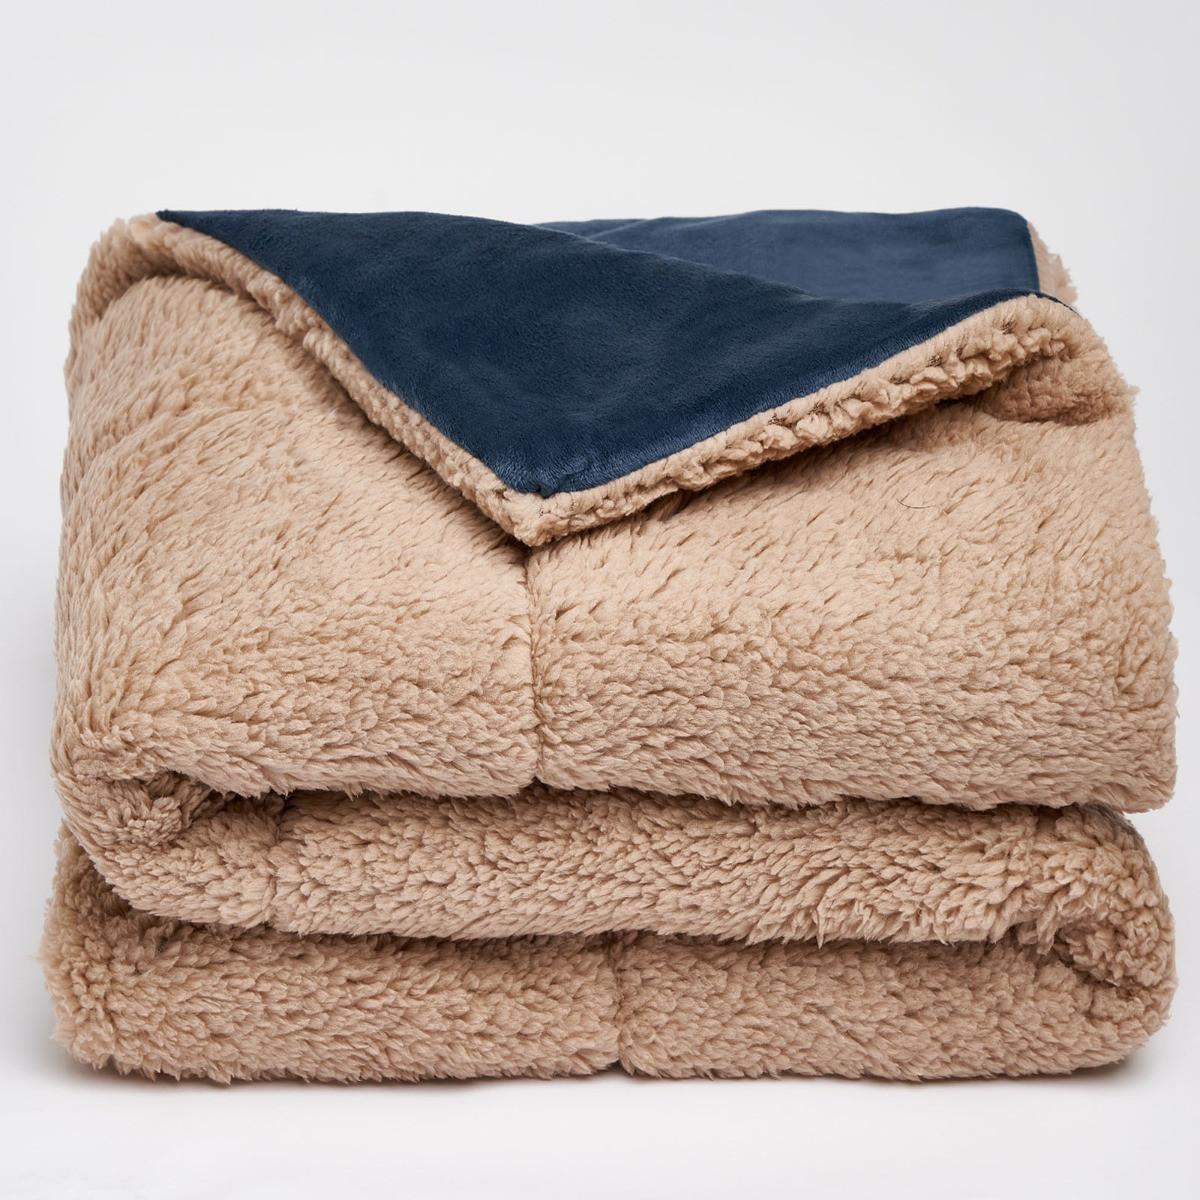 Brentfords Sherpa Soft Pet Blanket - Navy Blue>